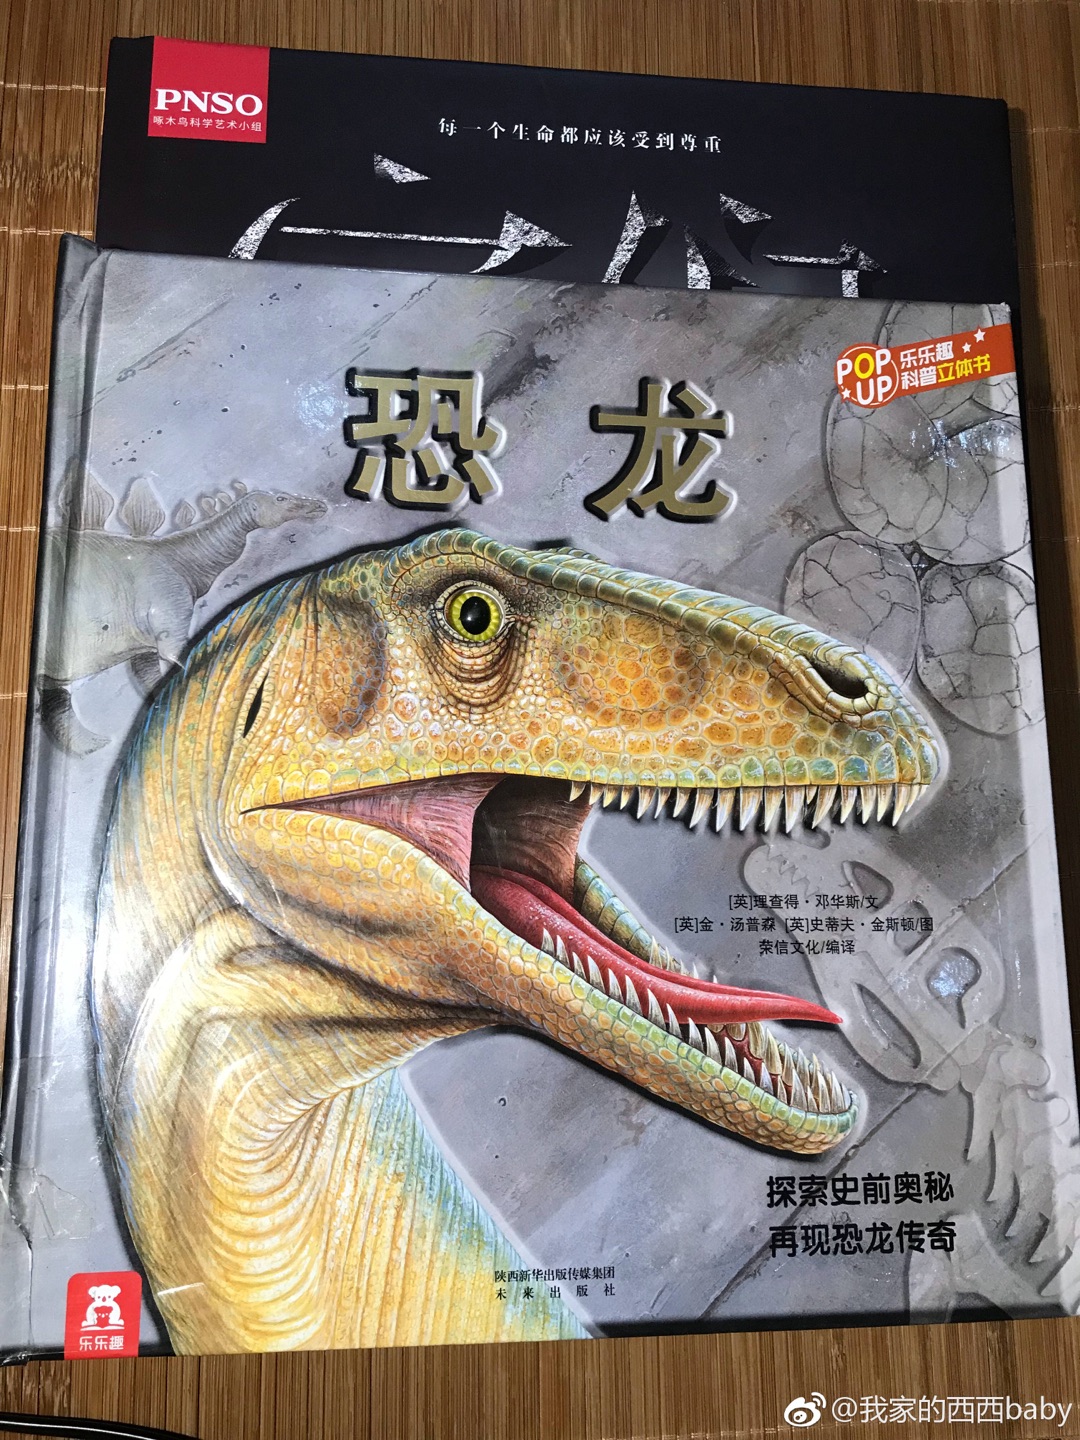 超级美的恐龙科普书，恐龙迷超级满足，和乐乐趣的恐龙结合起来看，再合适不过了！